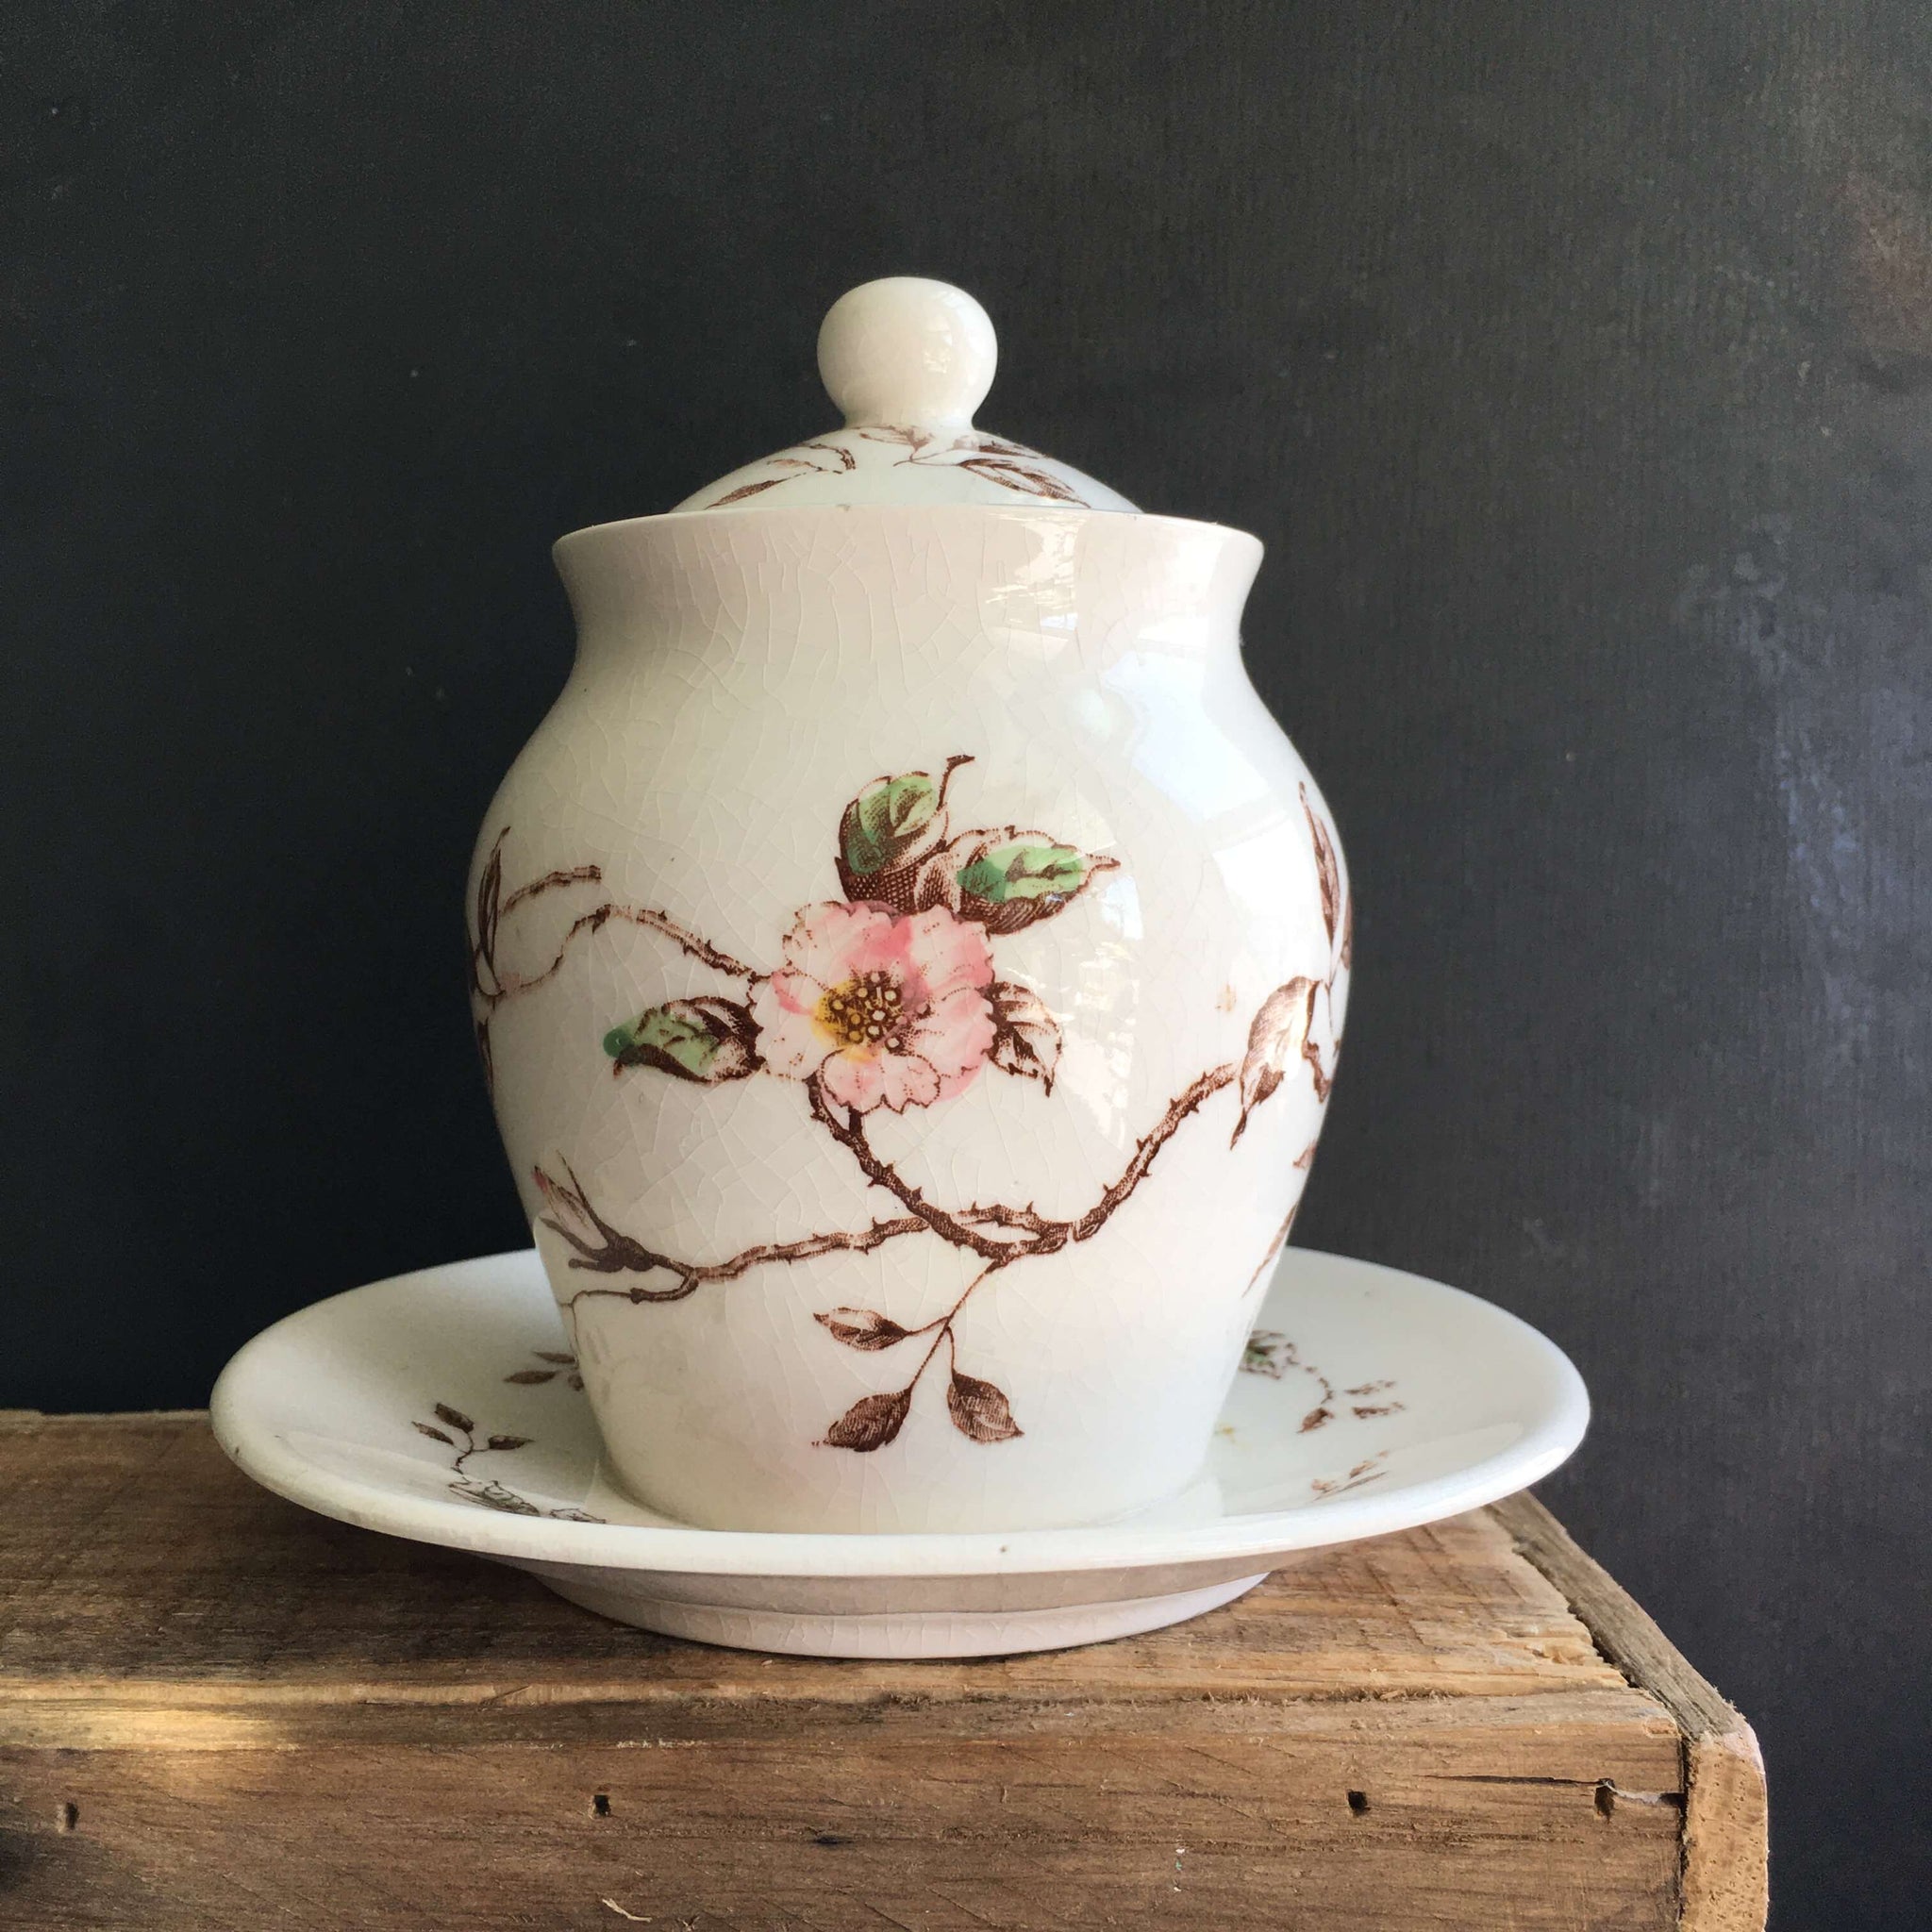 Vintage 1940's Floral Honey Jar Jam Jar - Made in Japan by Nasco - Springtime Pattern